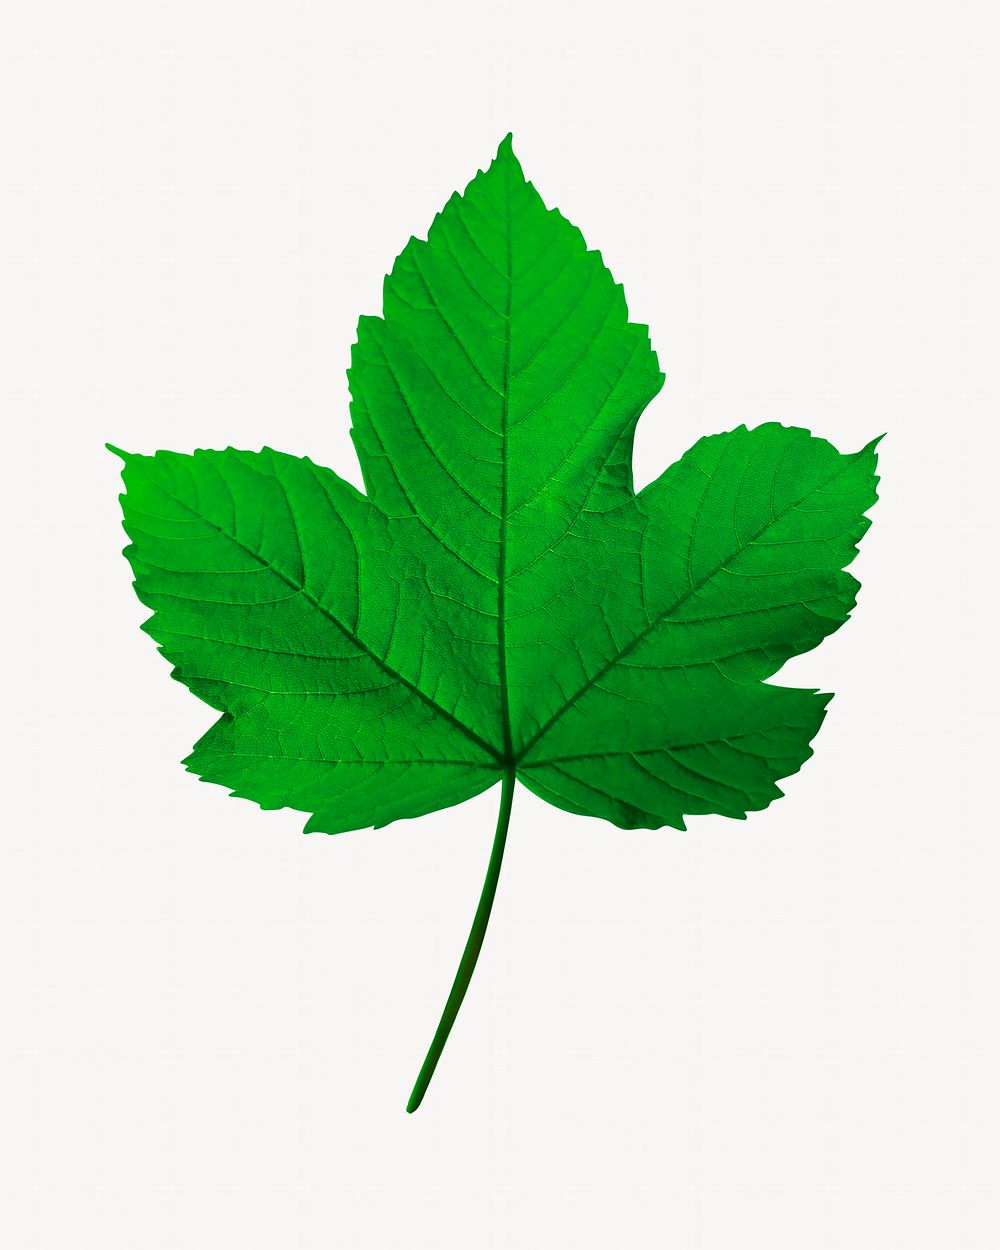 Maple leaf, botanical isolated image